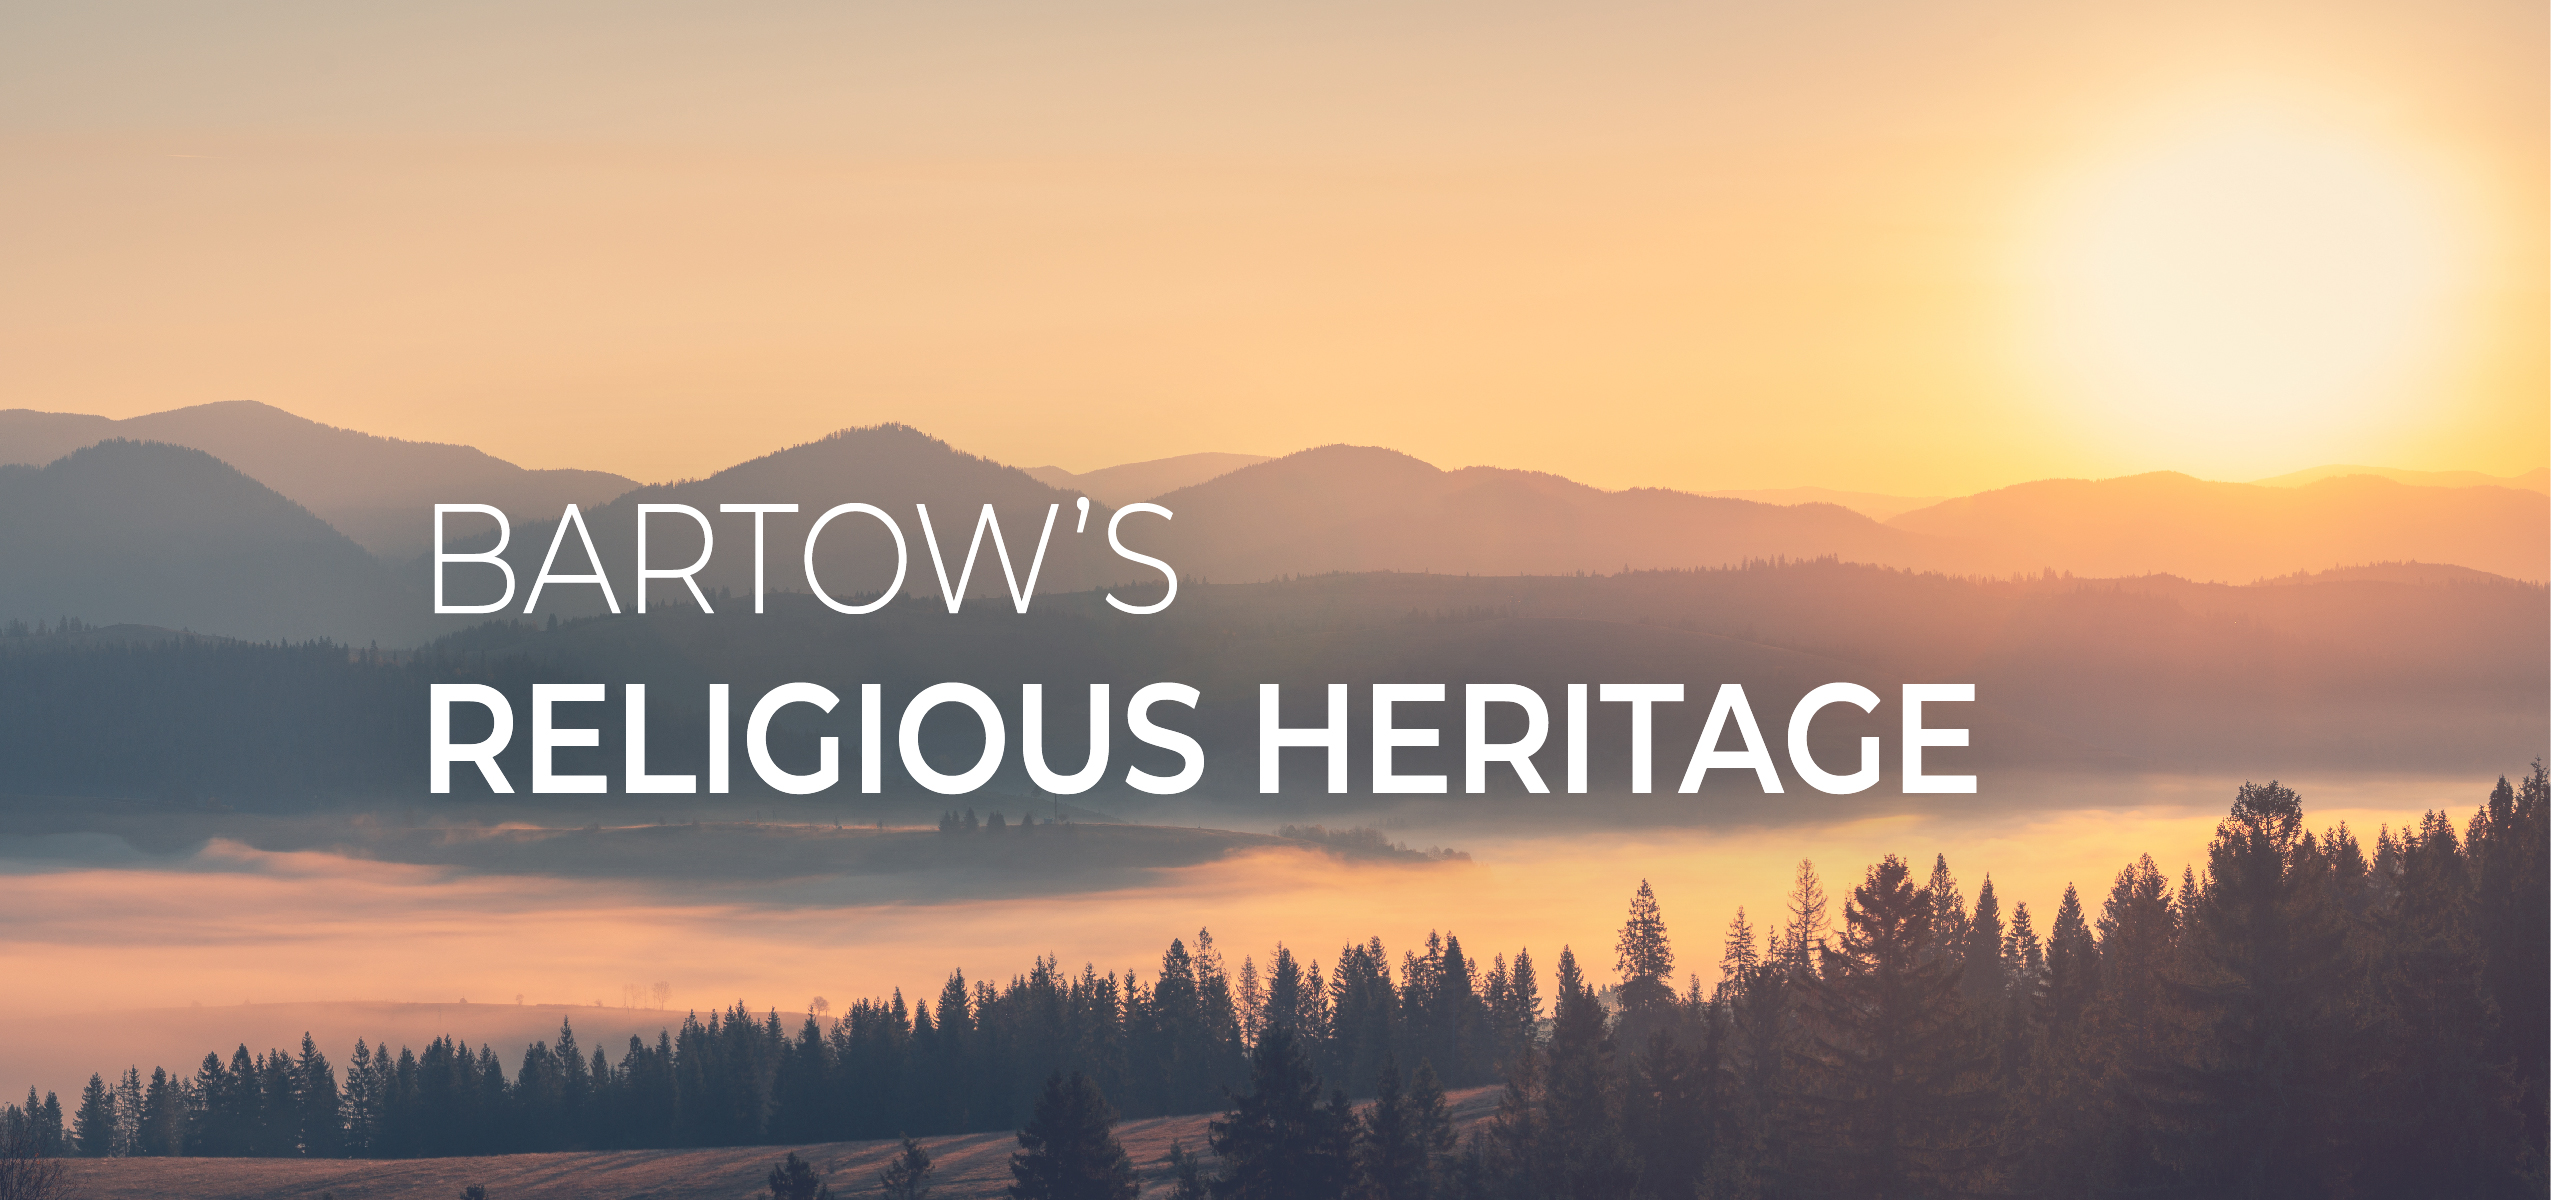 Bartow's Religious Heritage